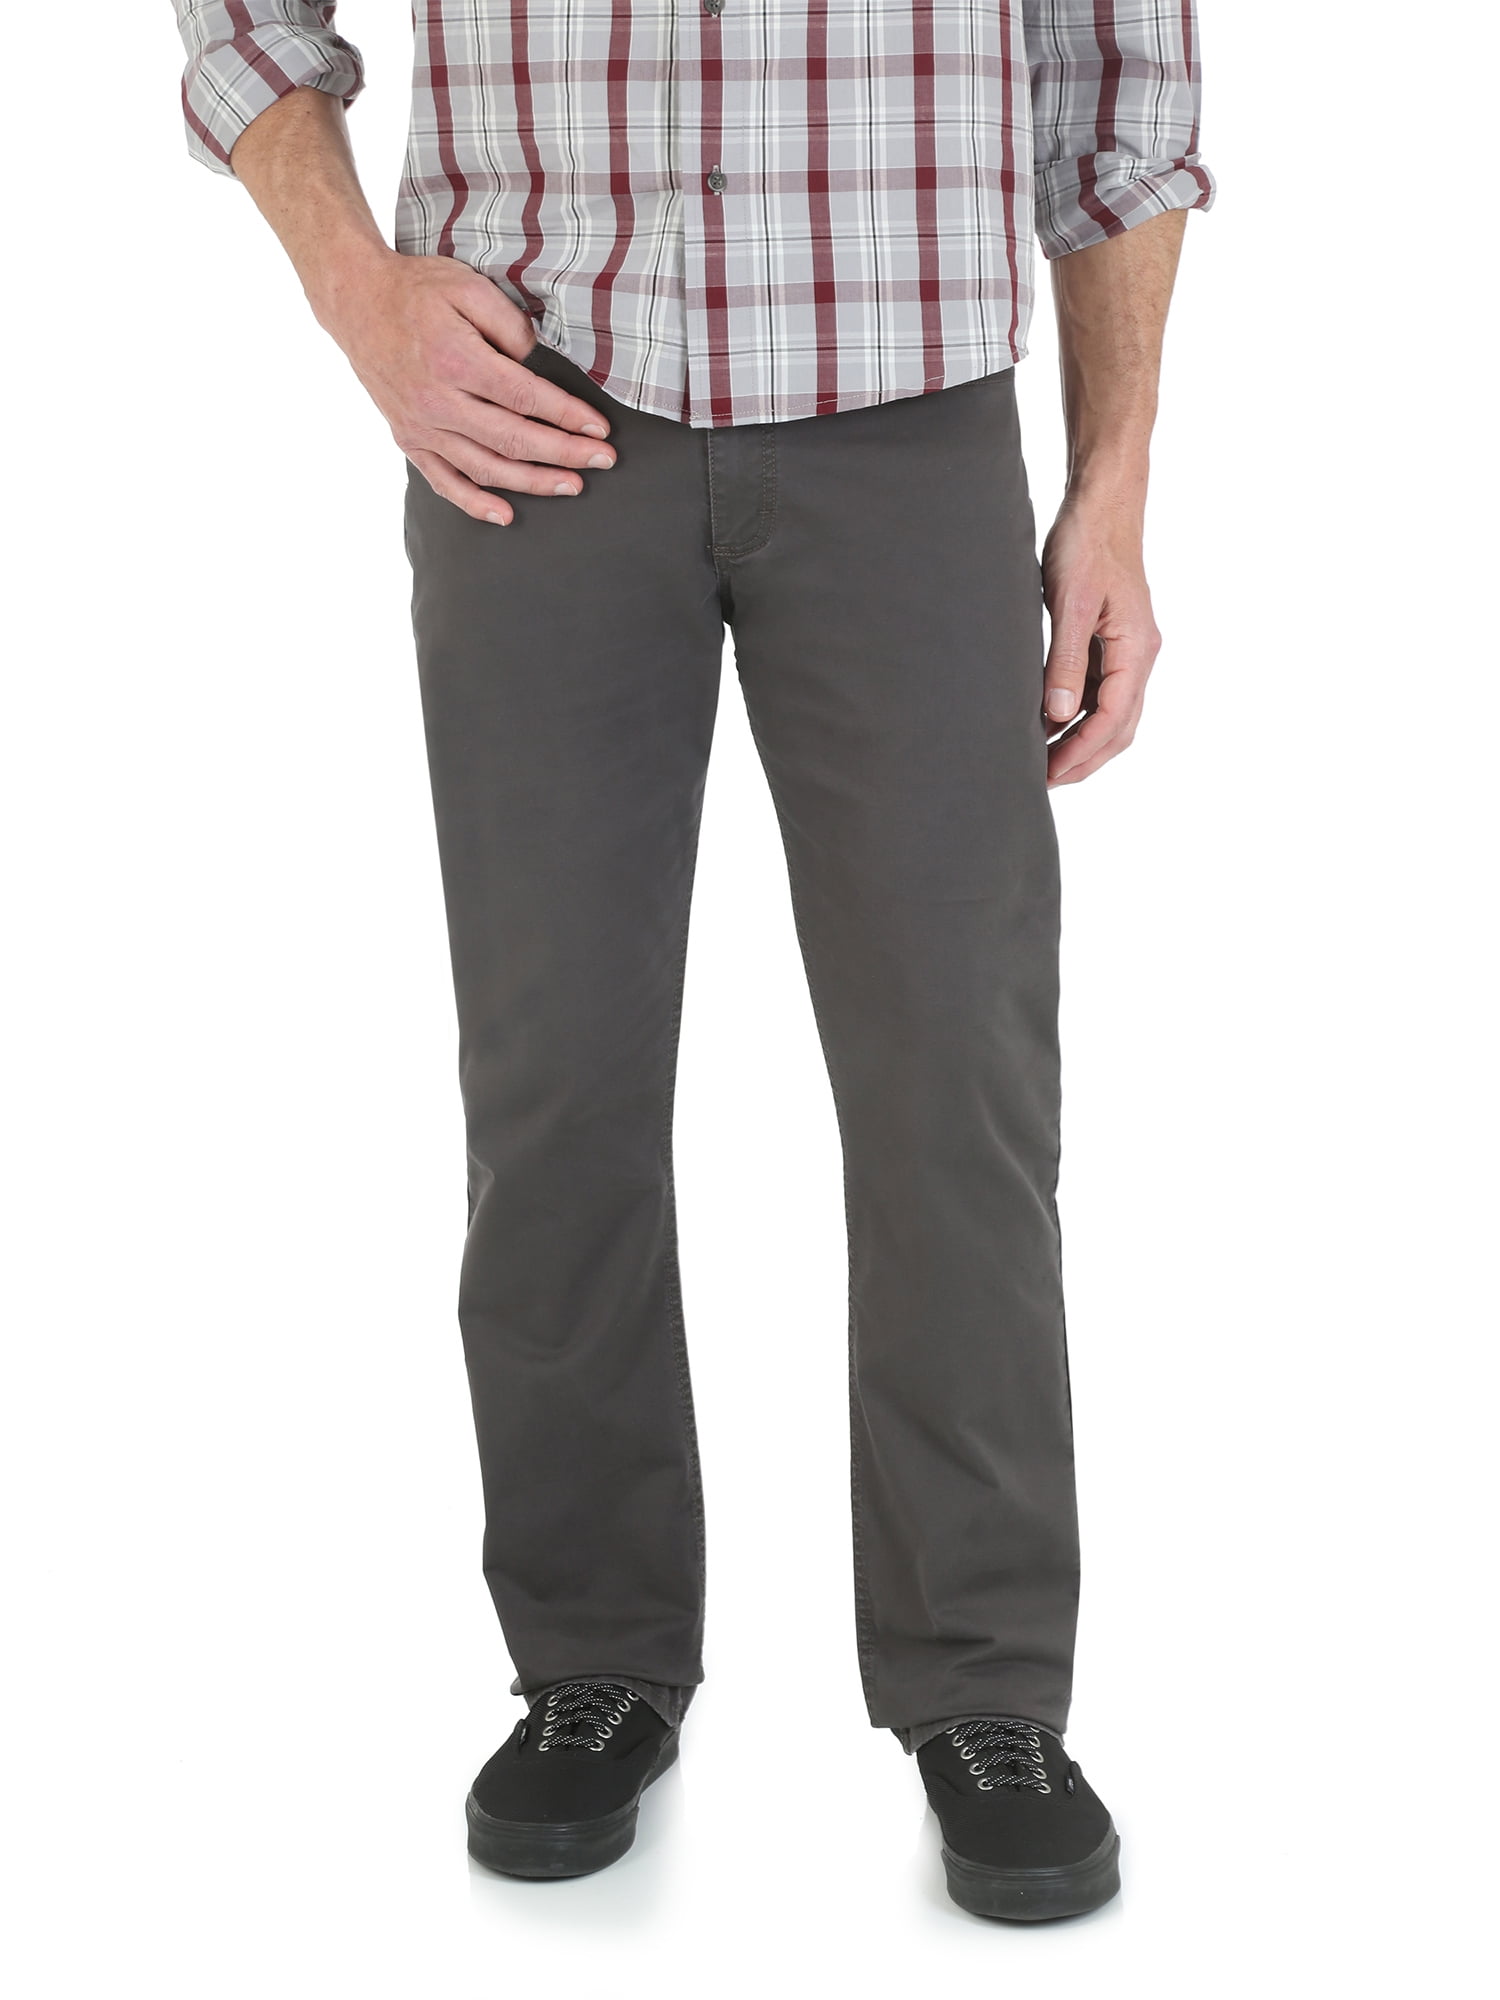 Wrangler - Wrangler Men's Straight Fit 5 Pocket Pant - Walmart.com